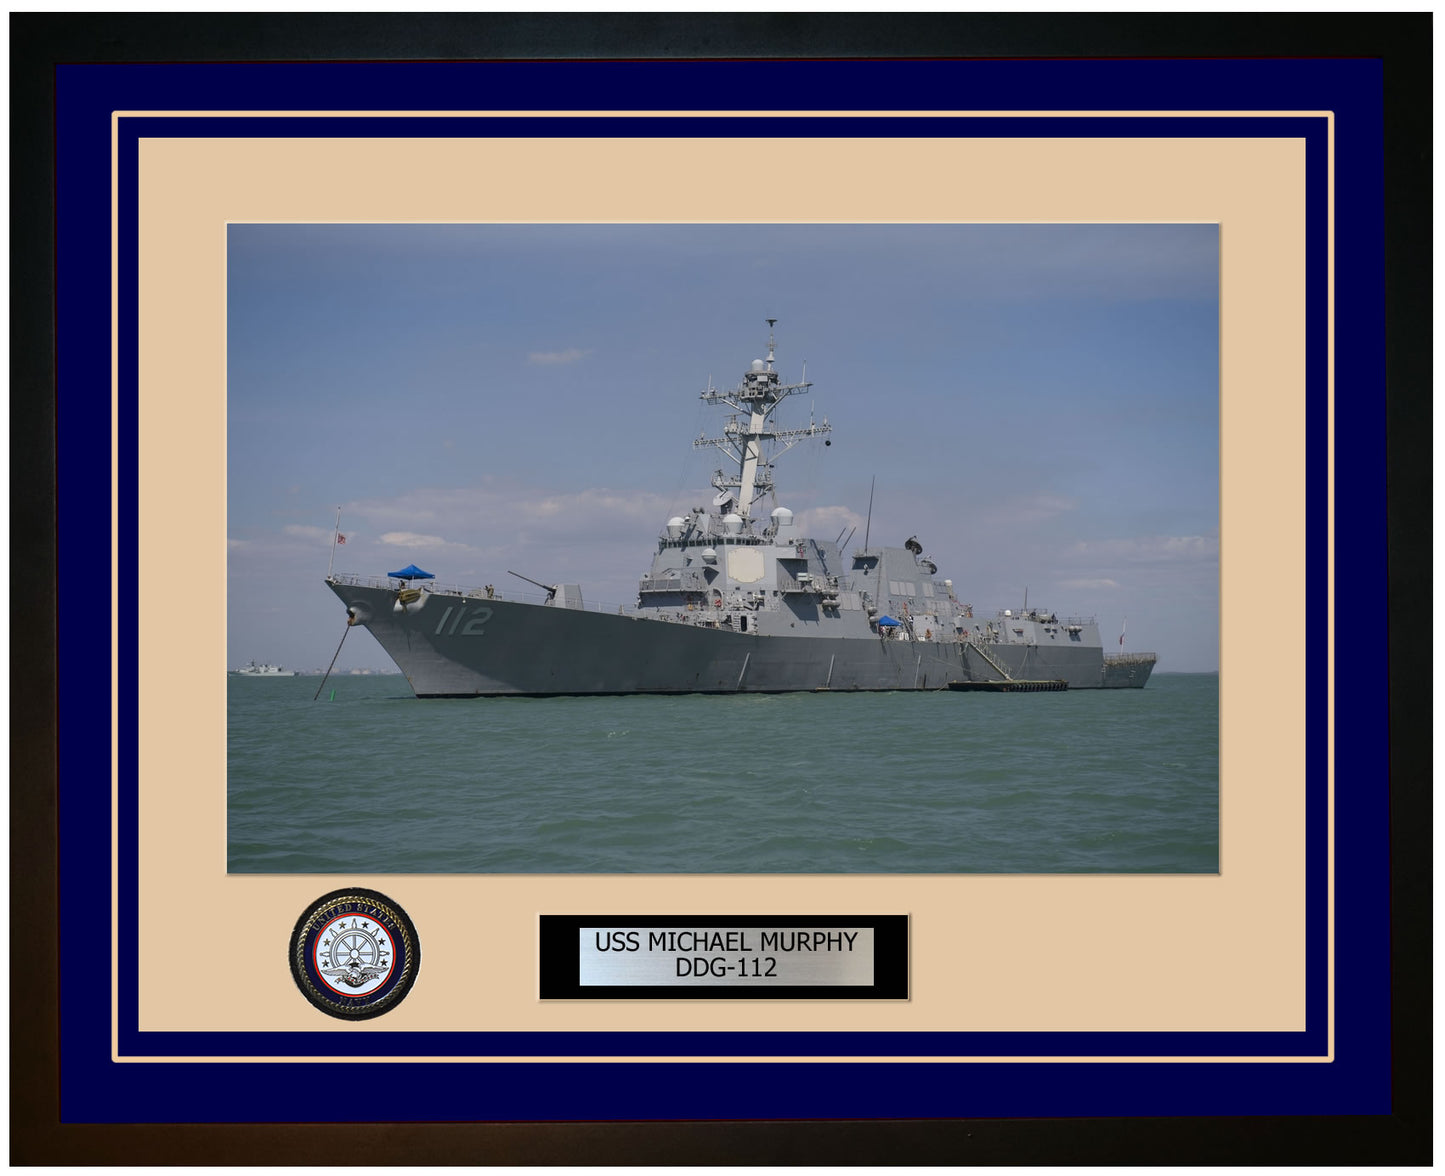 USS MICHAEL MURPHY DDG-112 Framed Navy Ship Photo Blue